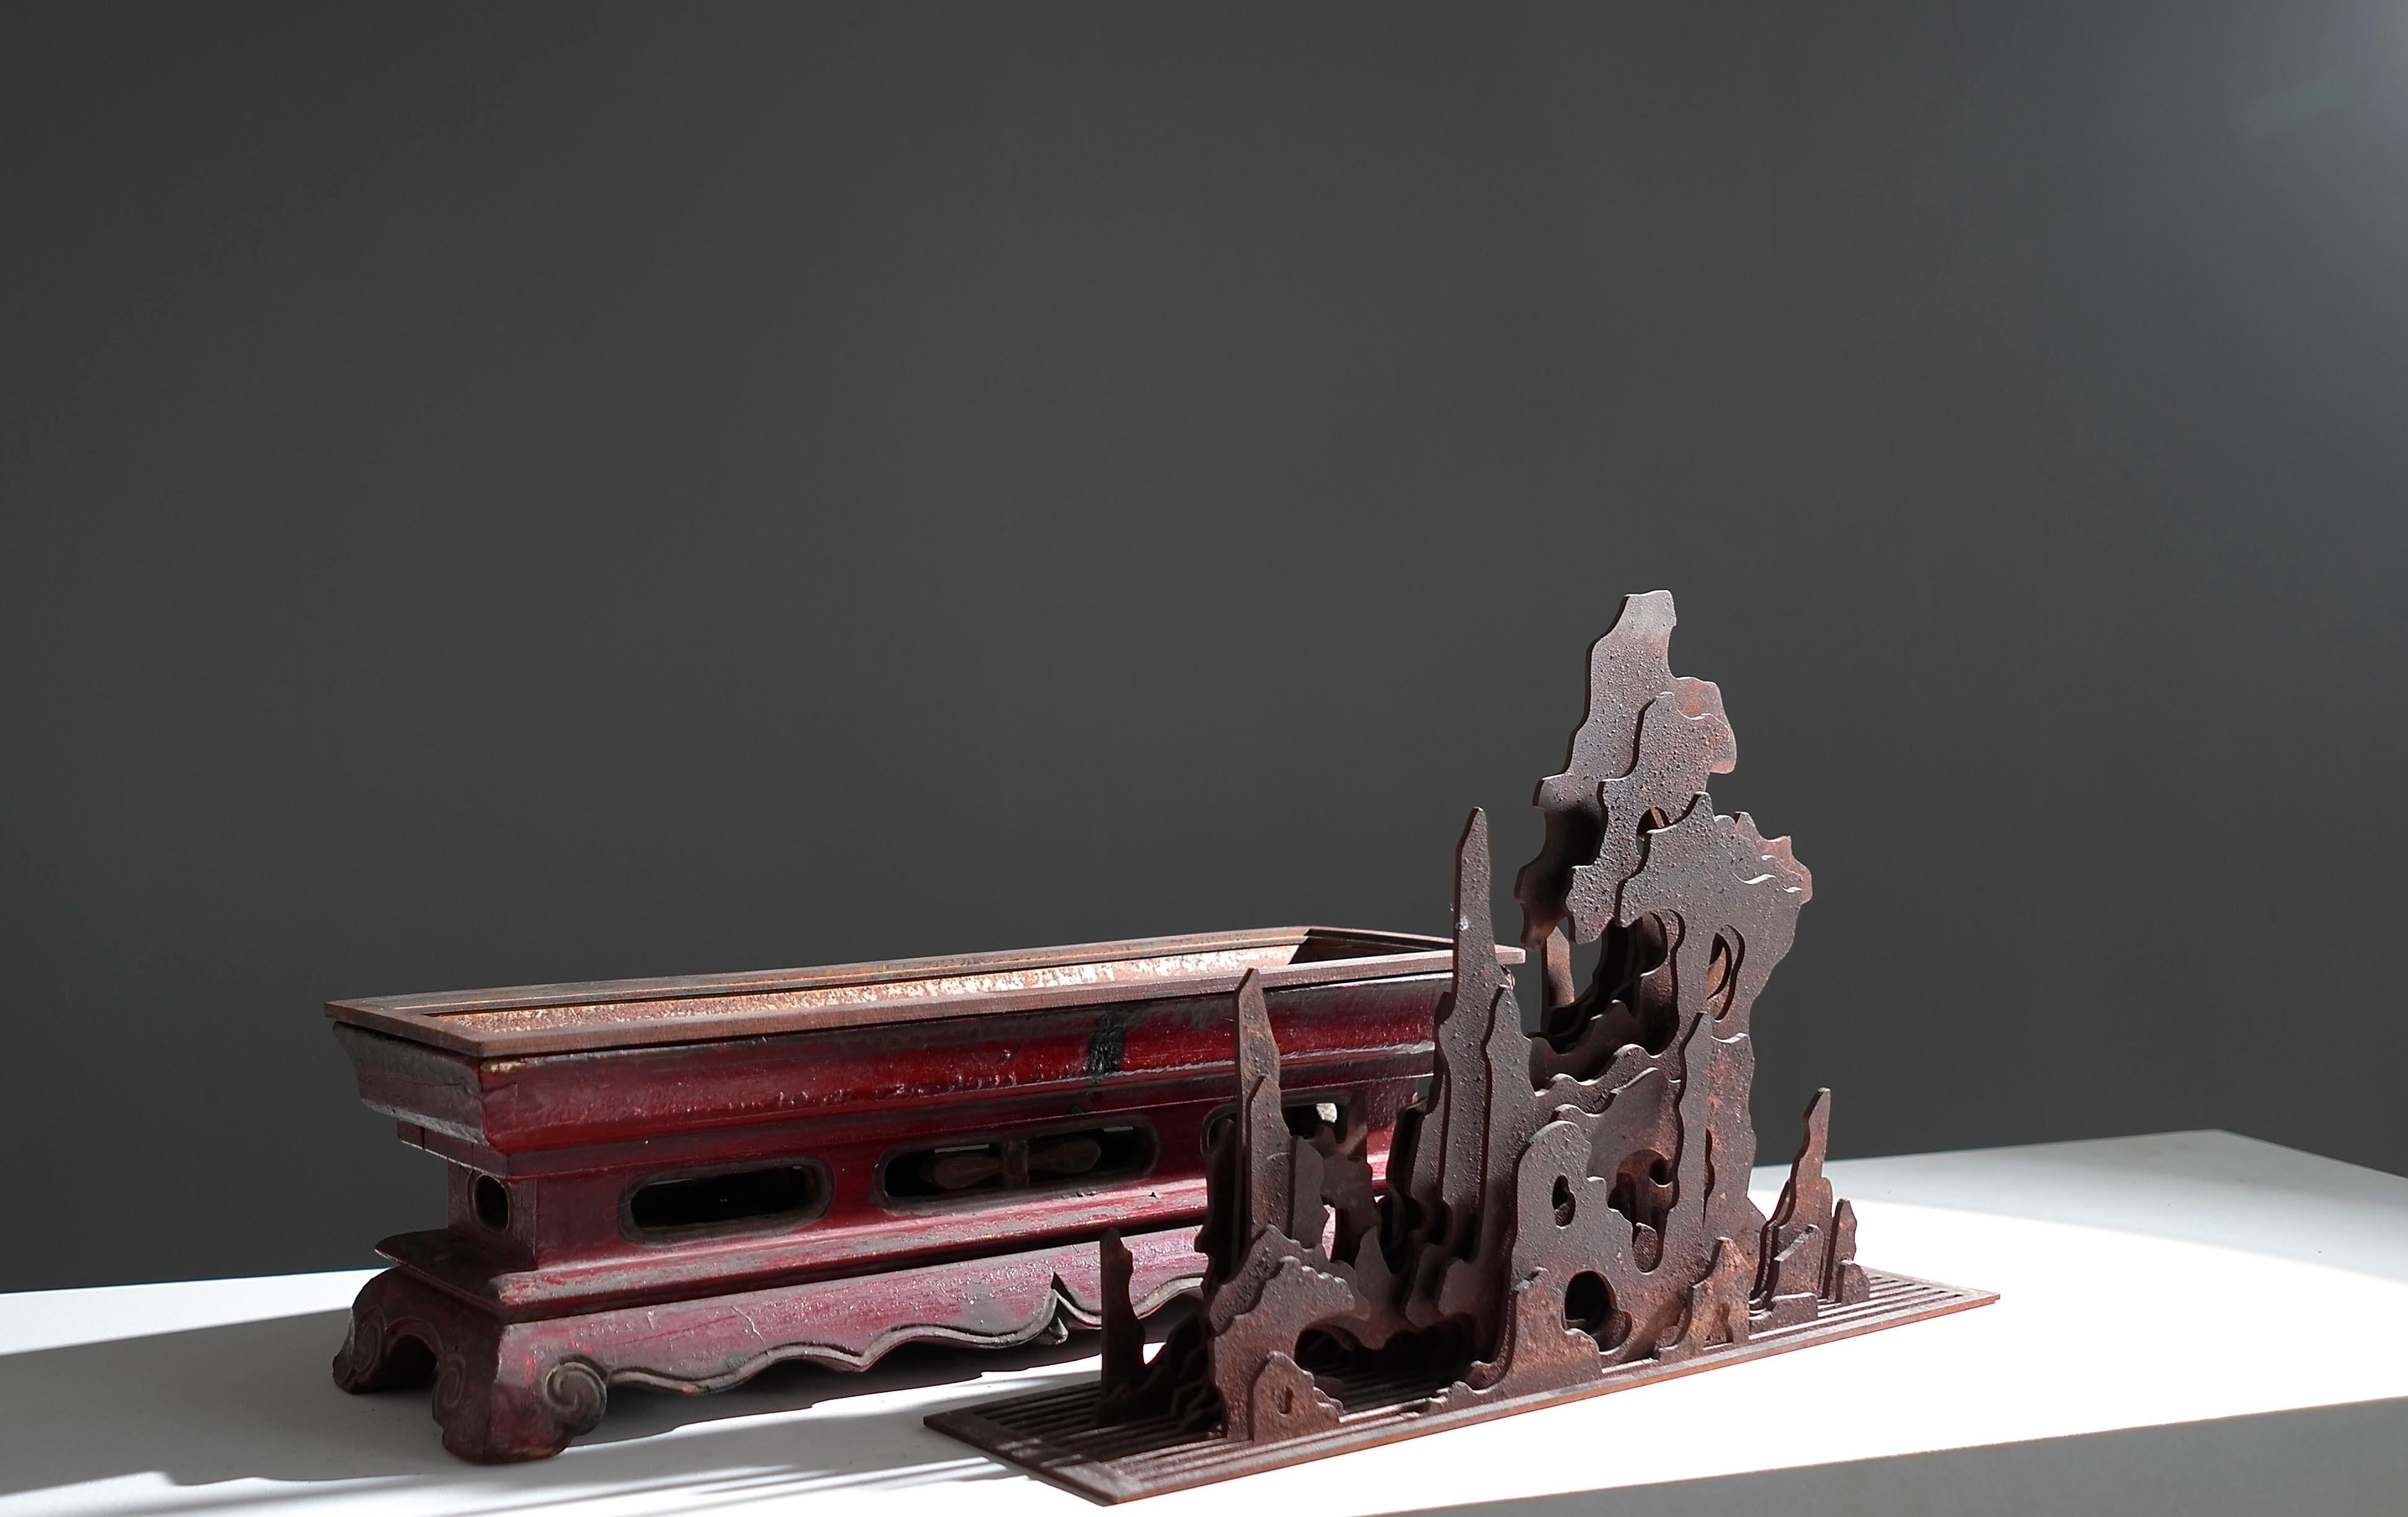 Über das Kunstwerk:
Künstler: Yang Dongying
Titel: Moderne beeindruckende Super-Flach-Skulptur-Untitled 
Datum:2020
Material: Dynasty Lack Holz Rahmen（base）, Eisen 
Abmessungen: 37 x 12 x 32 cm 
Auflage: 1 / 1

Über den Künstler:
Yang Dongying ist